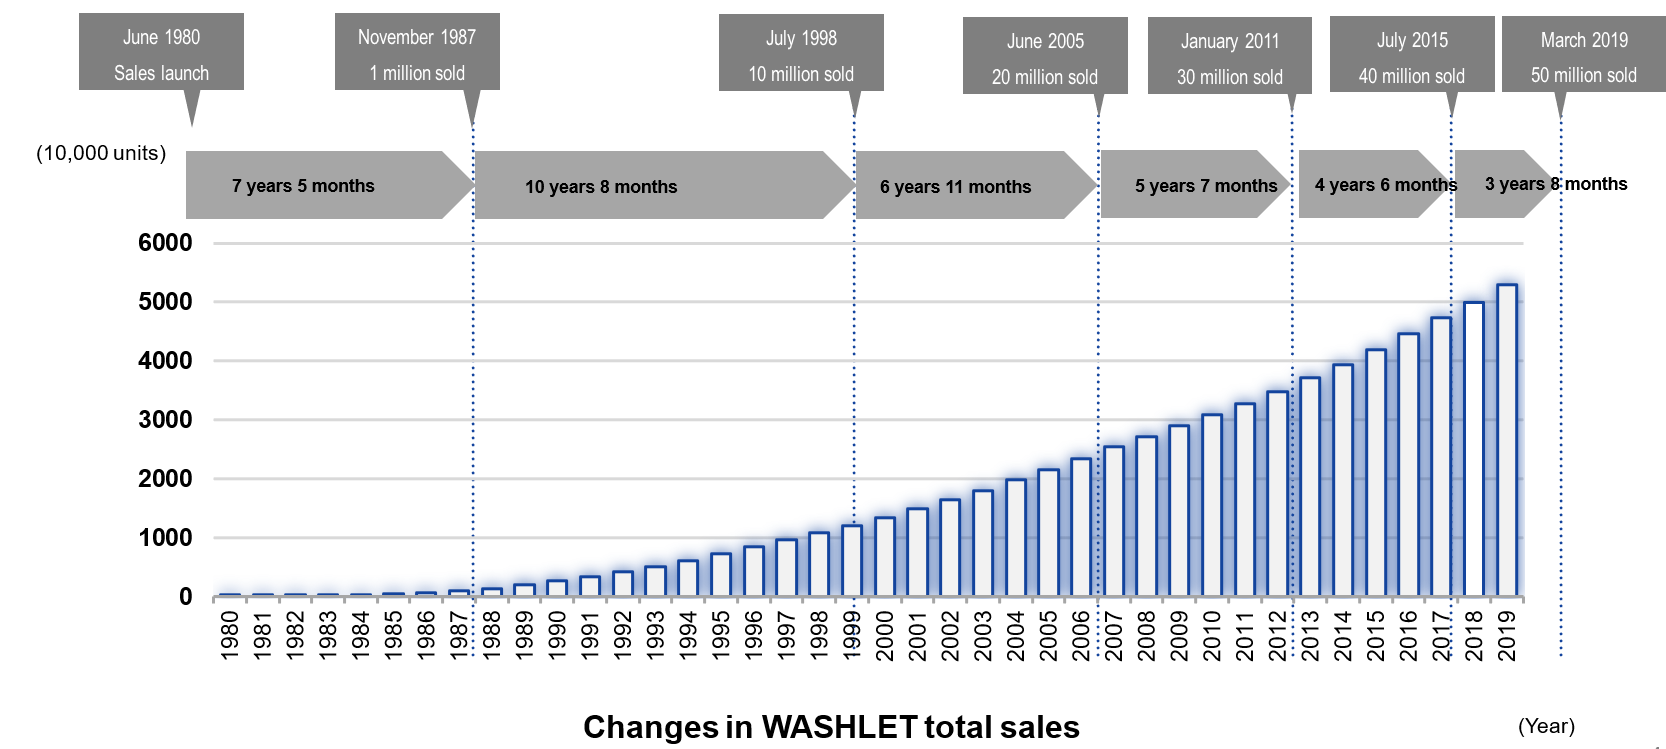 Changes in WASHLET total sales